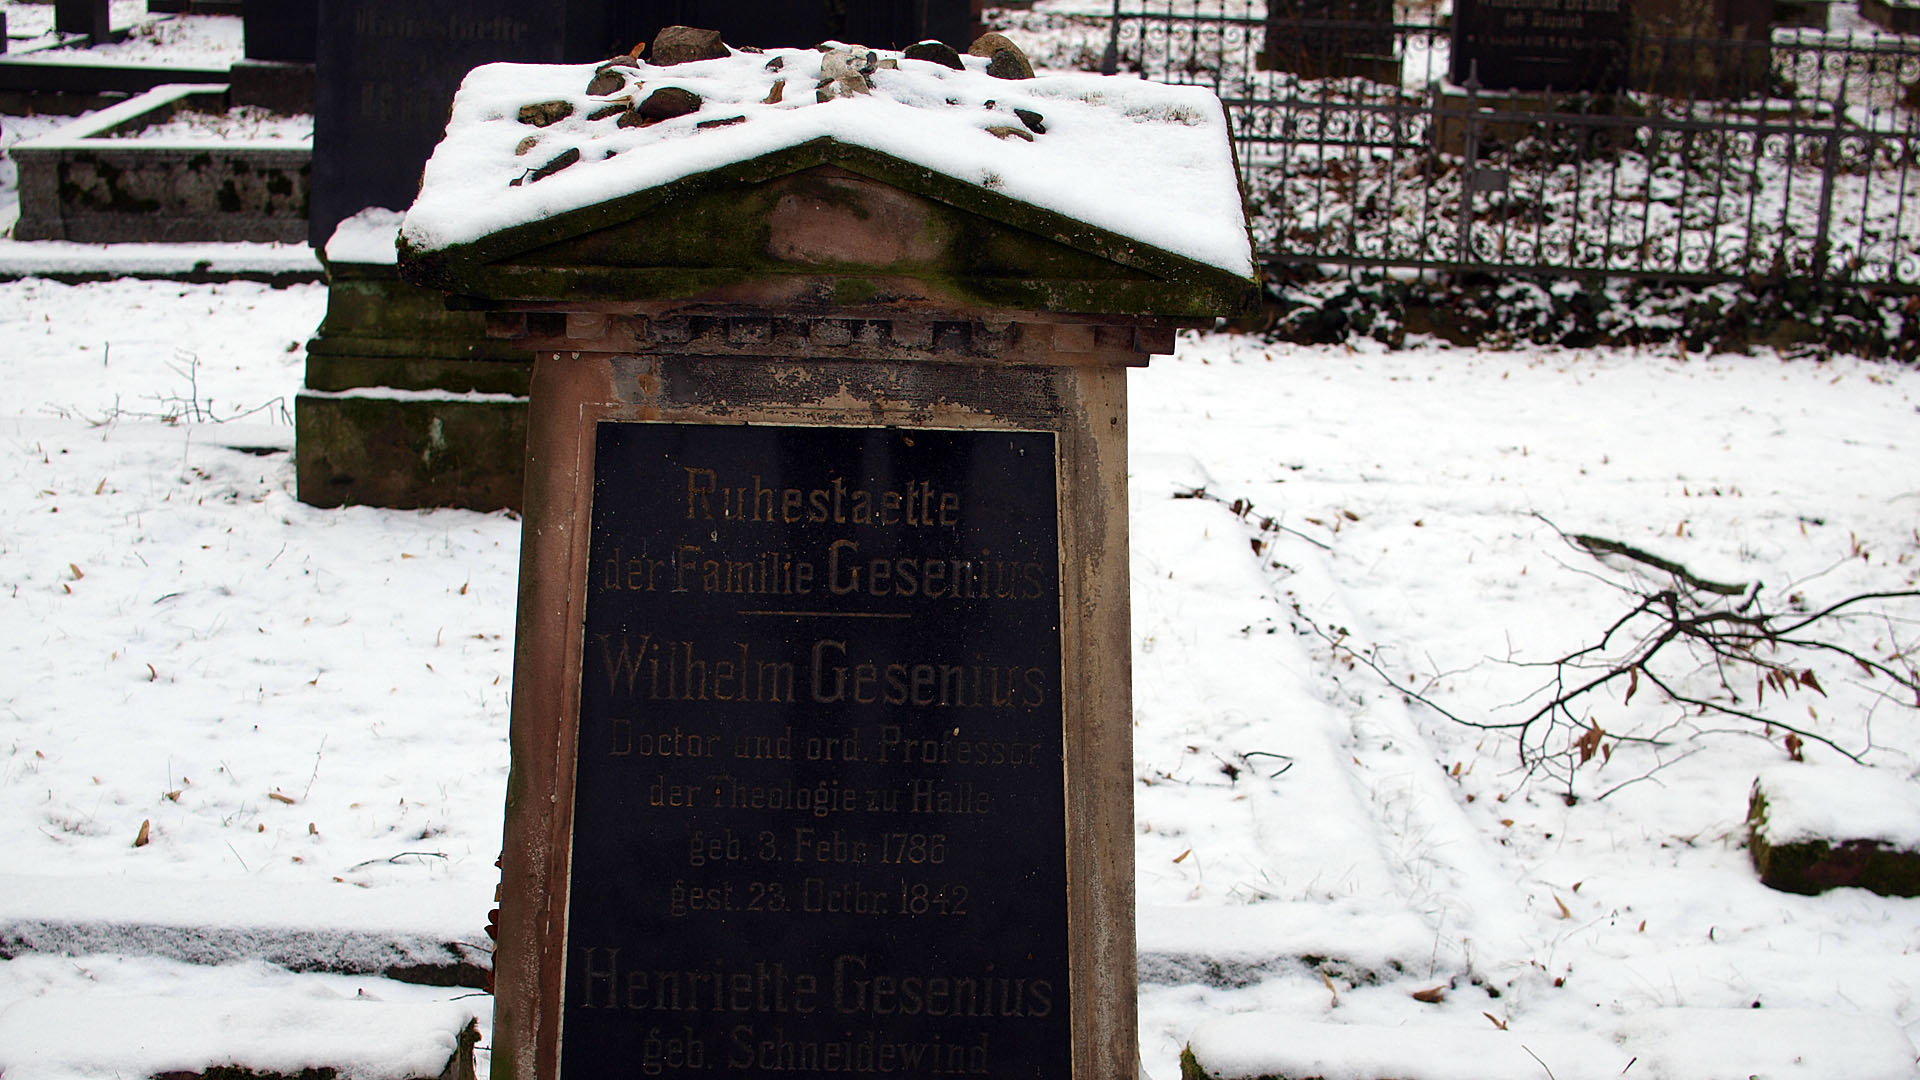 Am Vorabend ihrer Hebräischprüfung legen die Studenten einen Stein an der Grabstätte von Wilhelm Gesenius ab